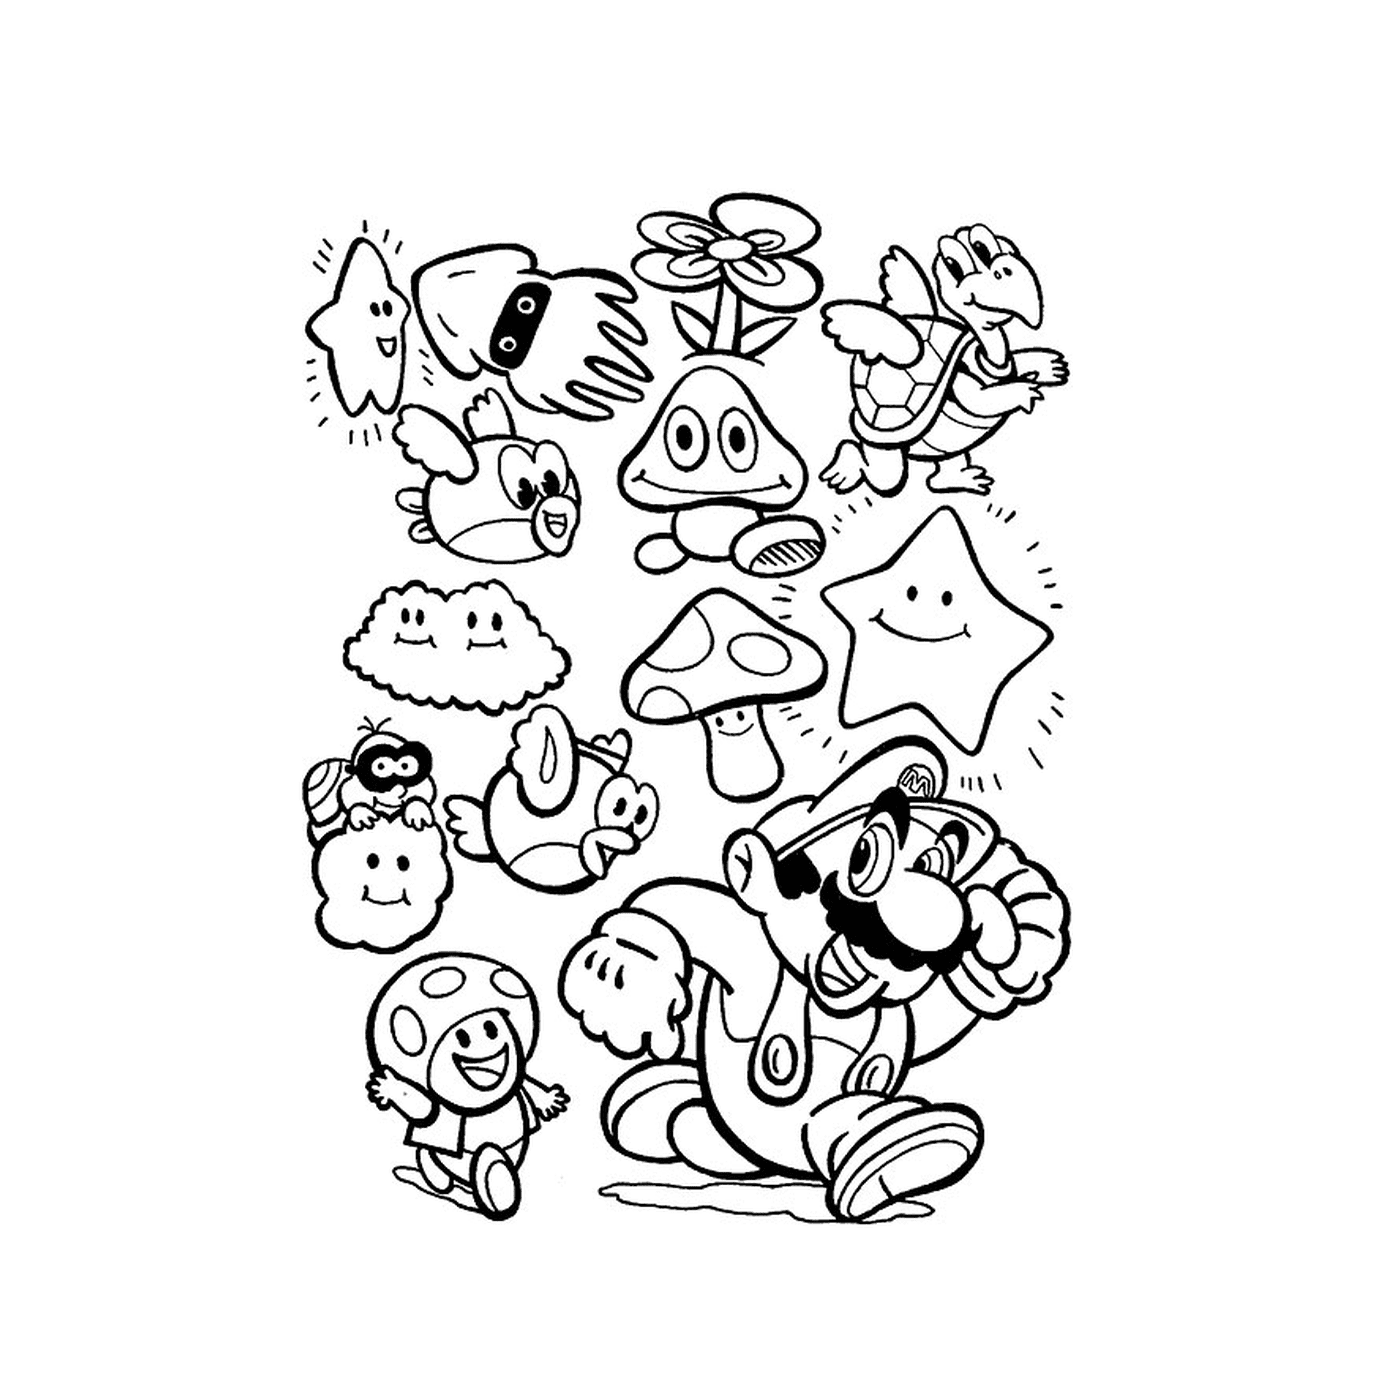  Eine Gruppe von Zeichentrickfiguren zusammen gezeichnet 